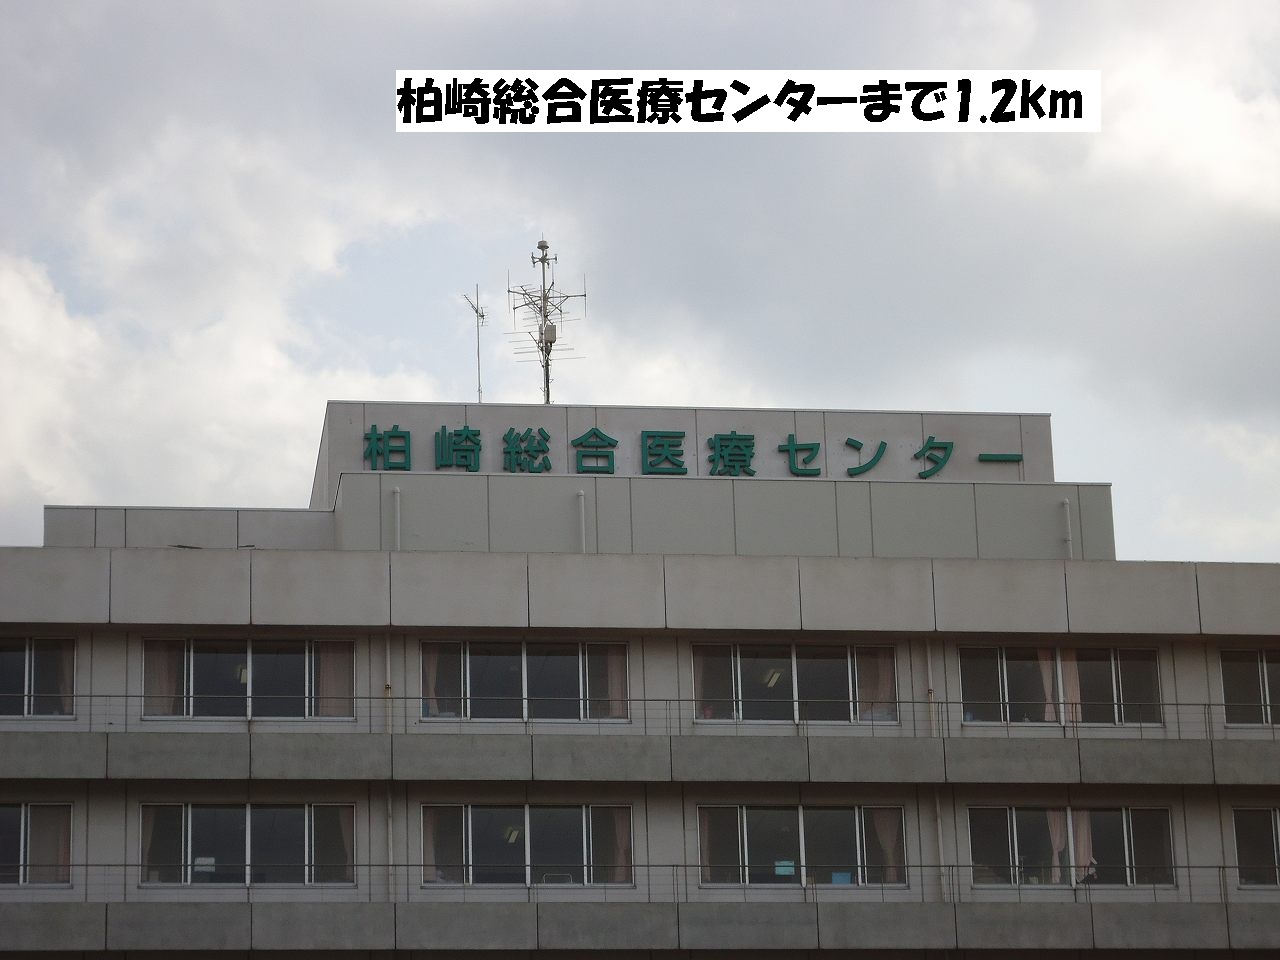 Hospital. Kashiwazaki General Medical Center until the (hospital) 1200m